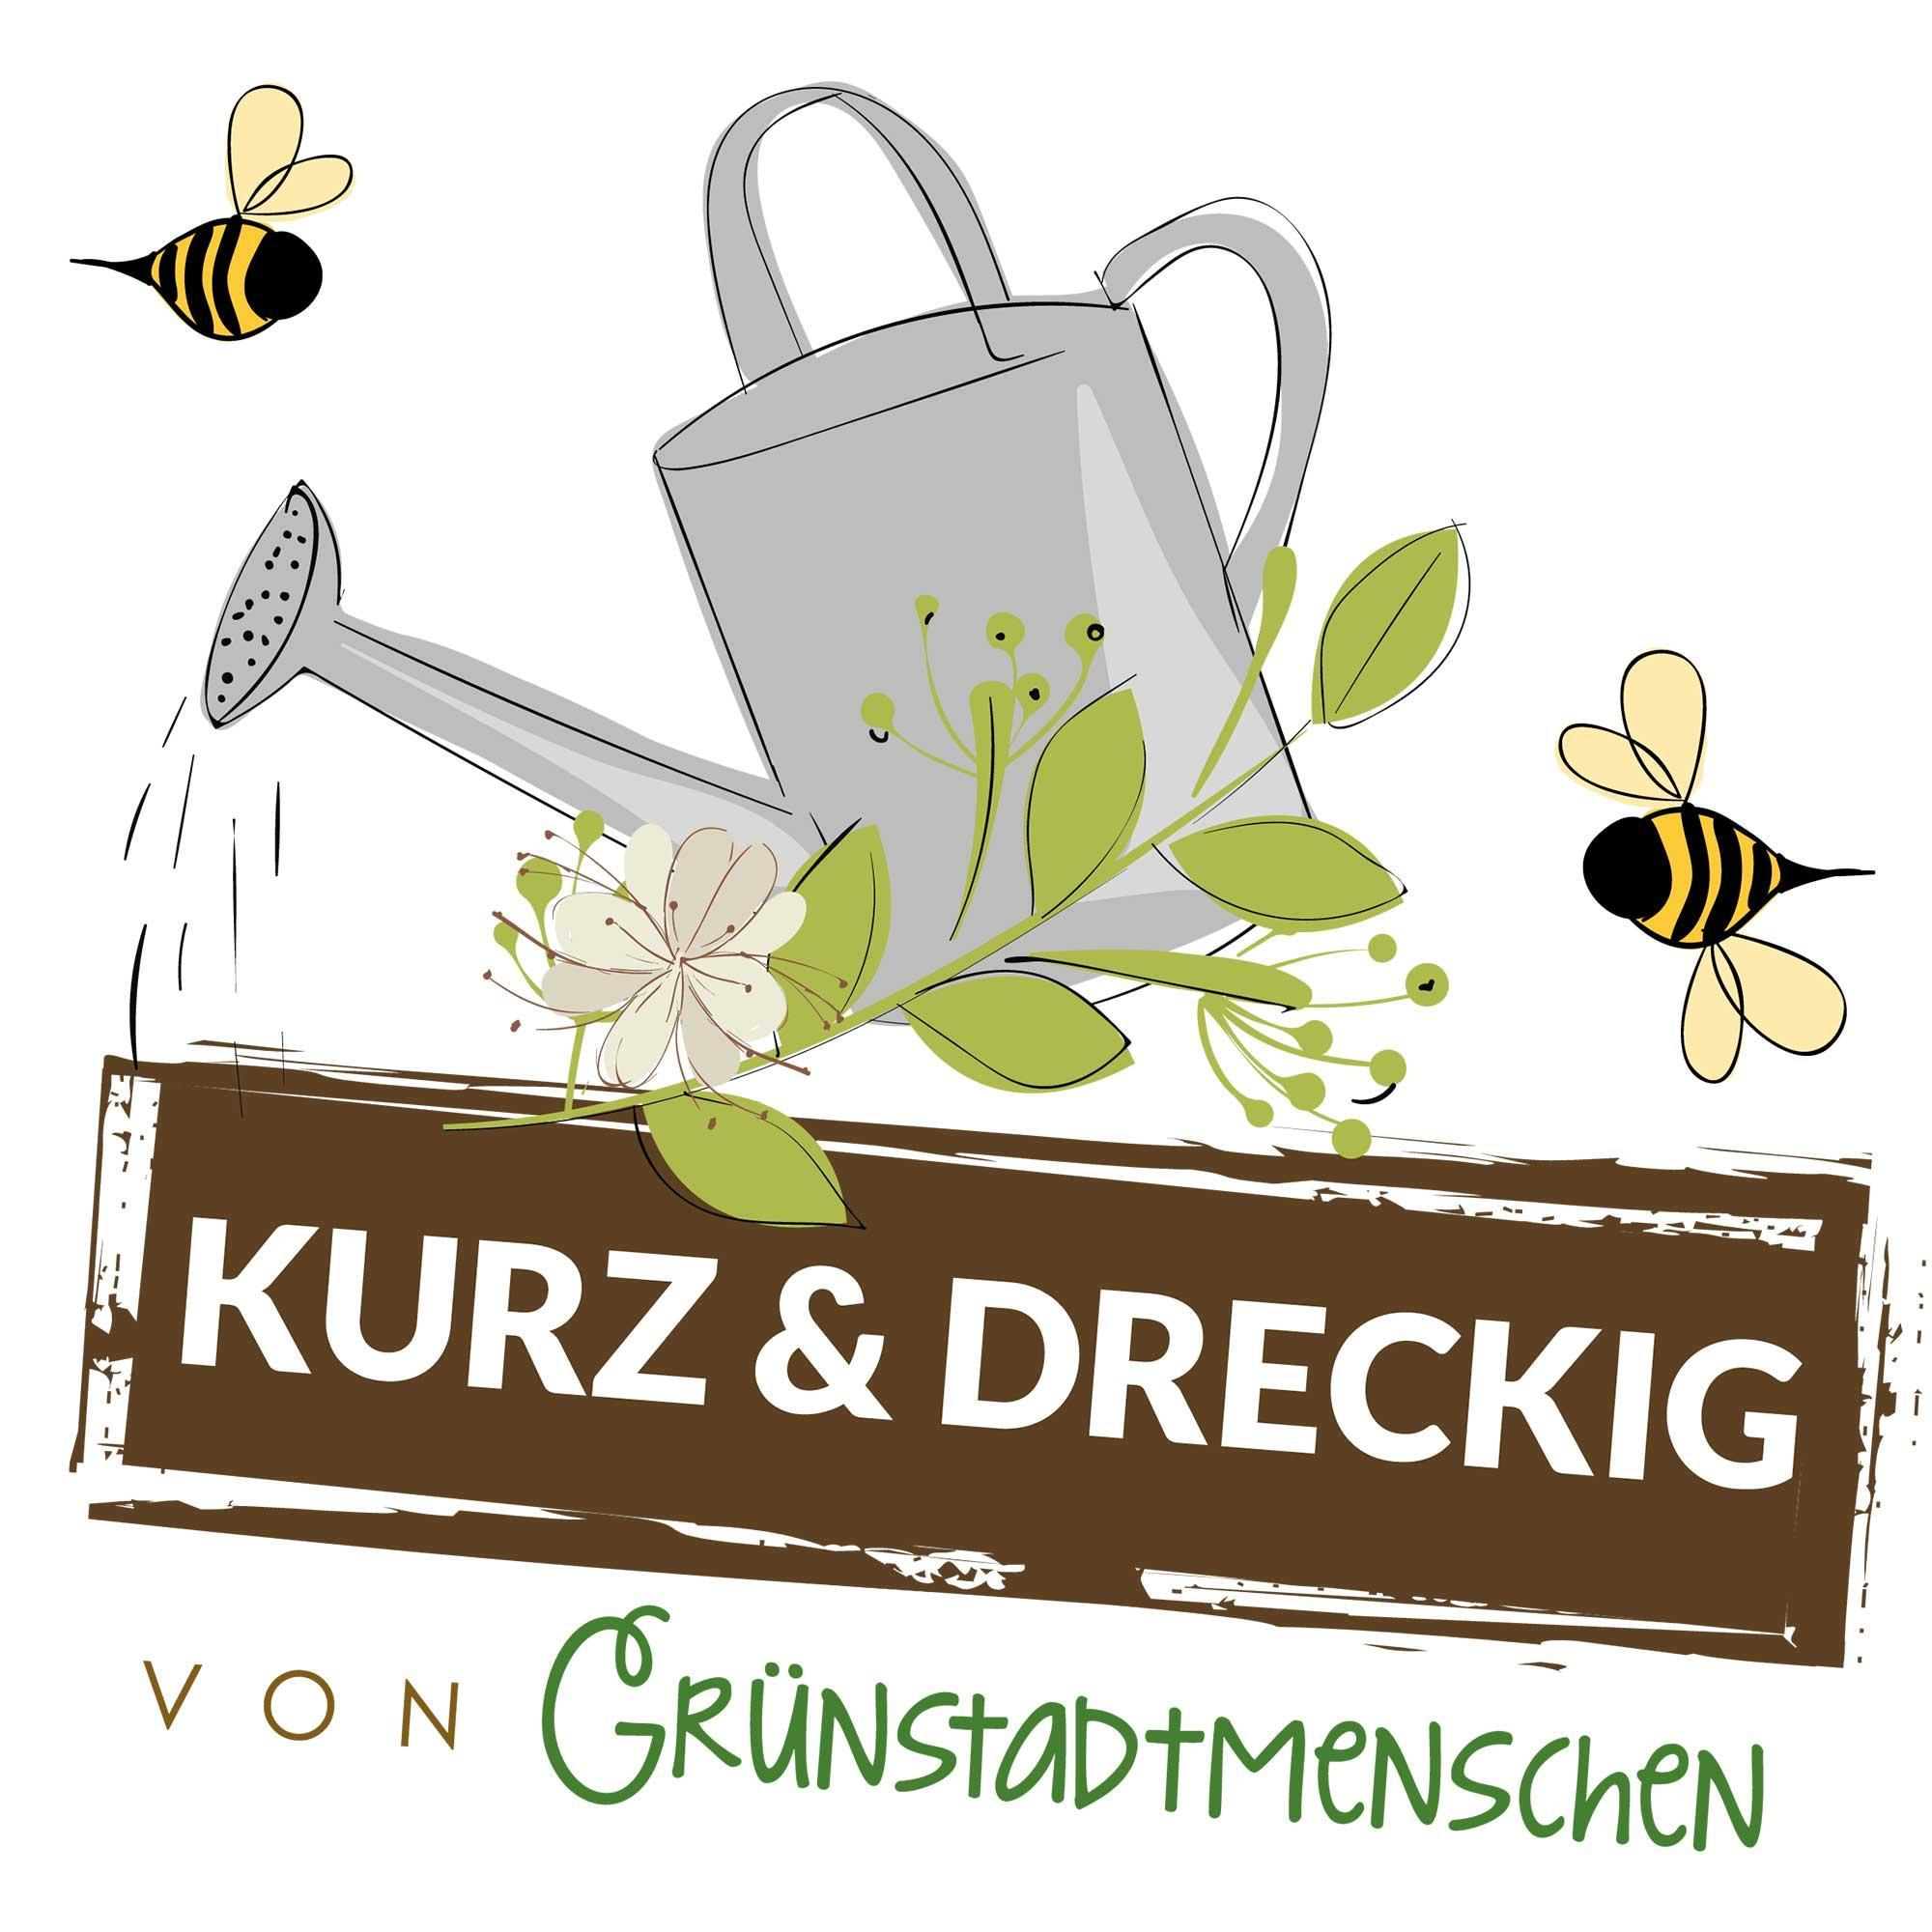 #57 Kurz & dreckig: Karinas Gartentipps für den Mai